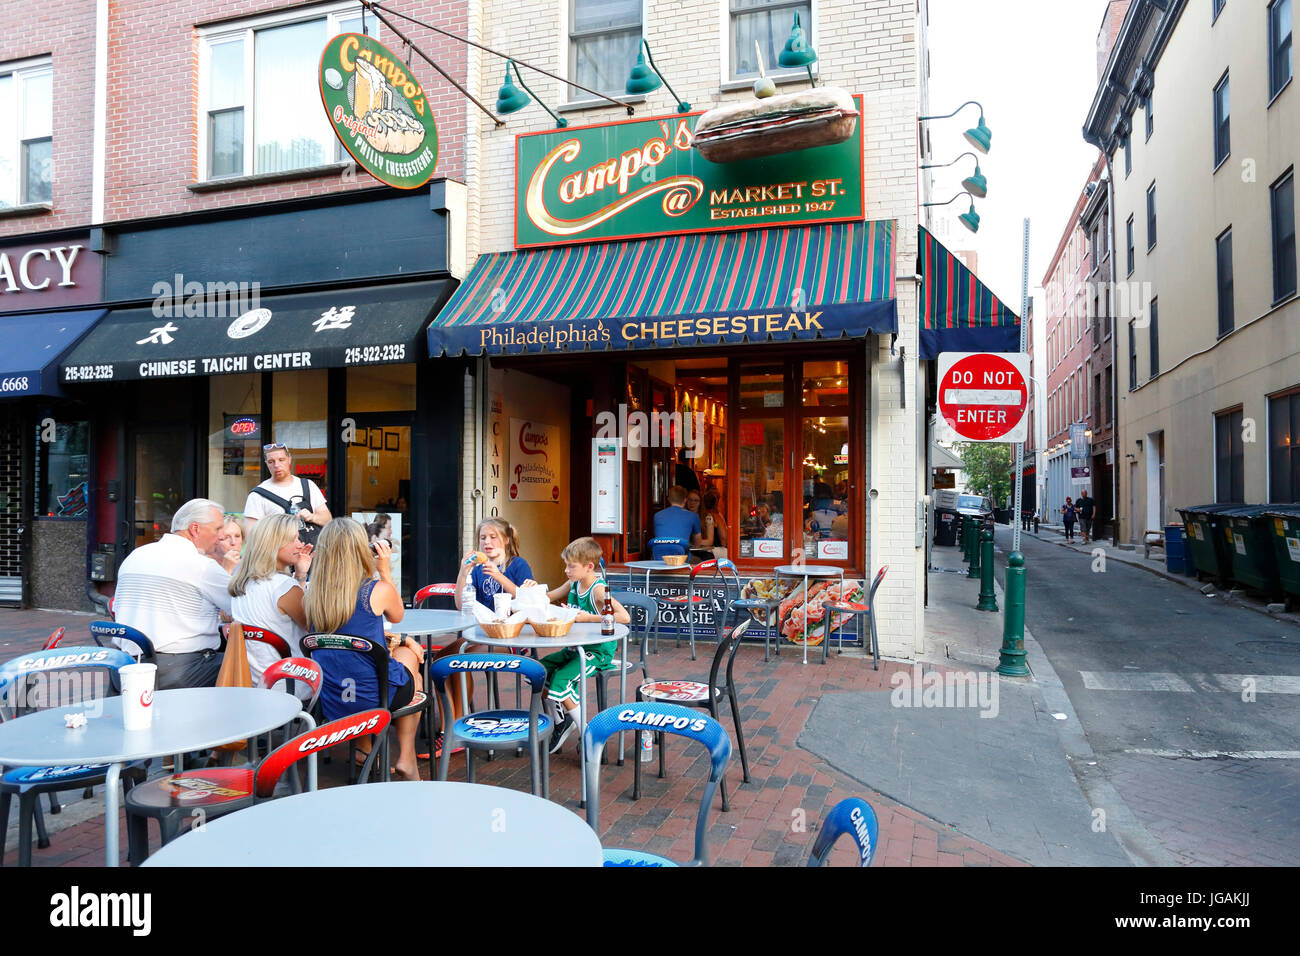 Campo's Cheesesteak, 214 Market St, Philadelphia, PA. Stock Photo